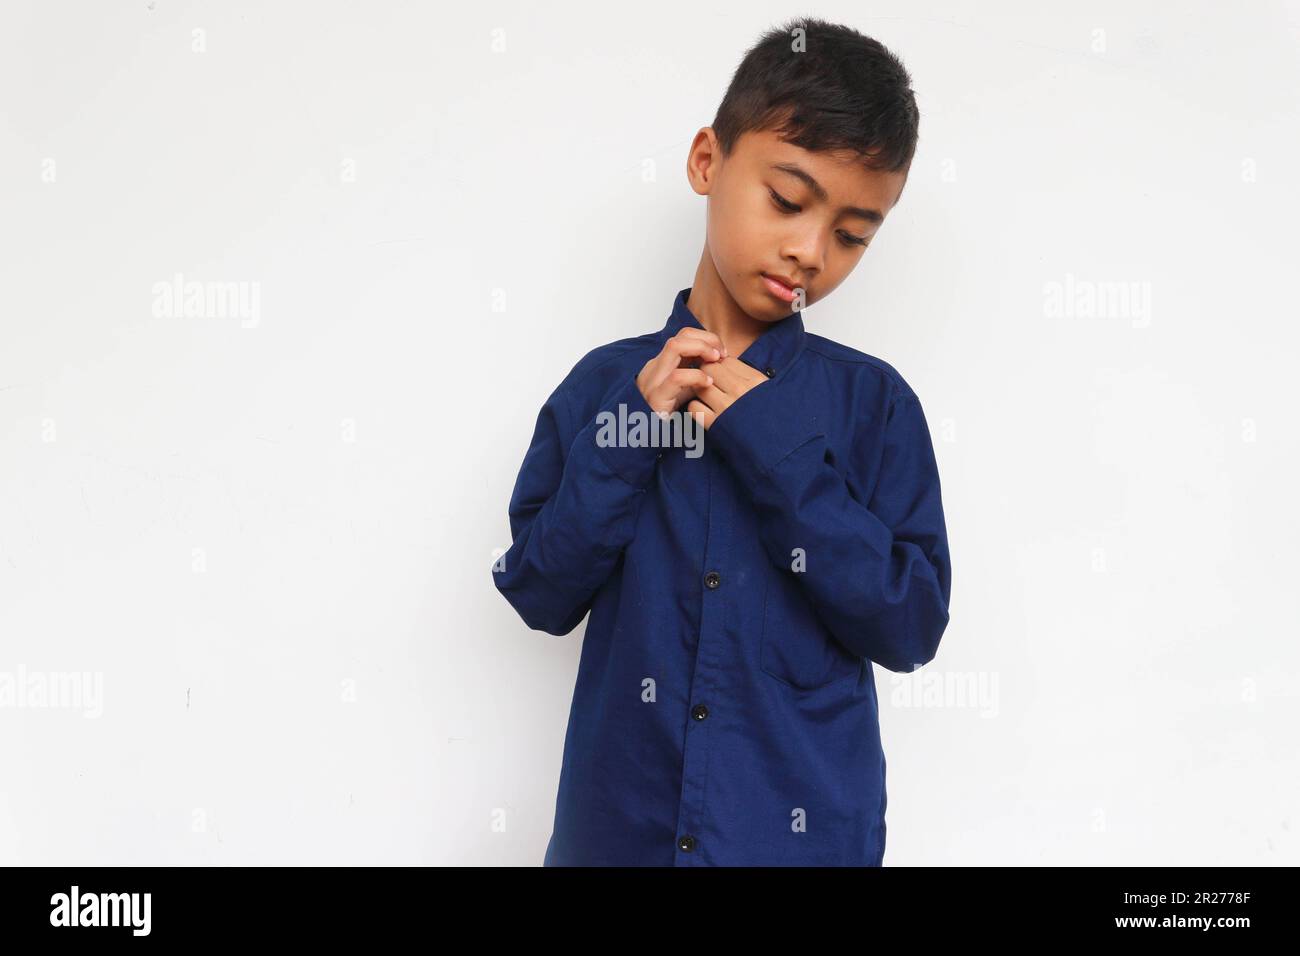 Sad boy wearing blue shirt isolated on white background Stock Photo